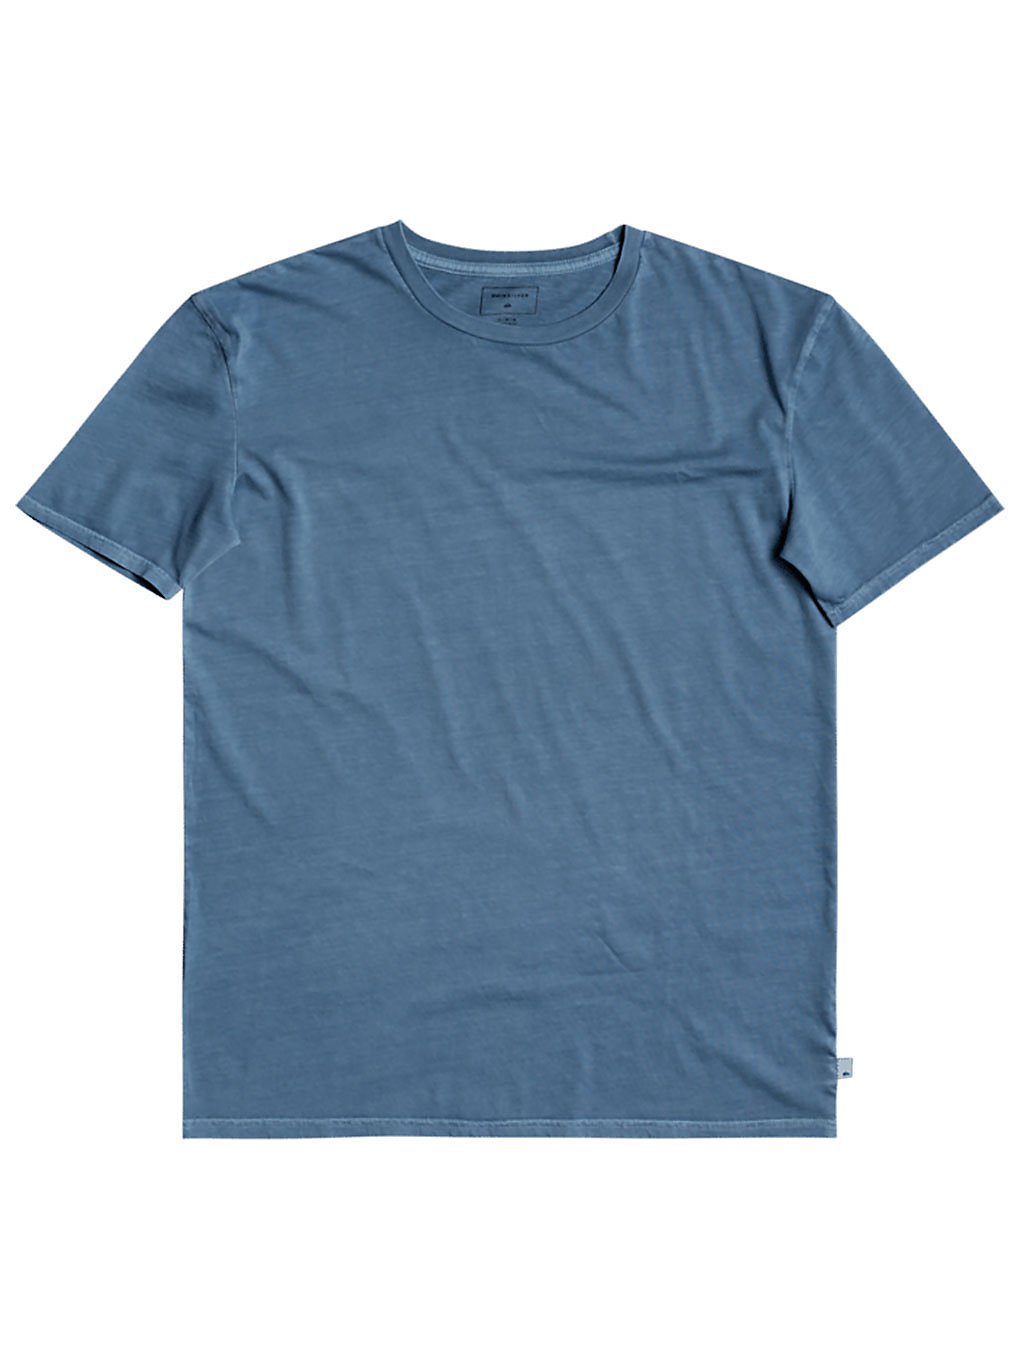 Quiksilver Bubble Jam T-Shirt blue heaven